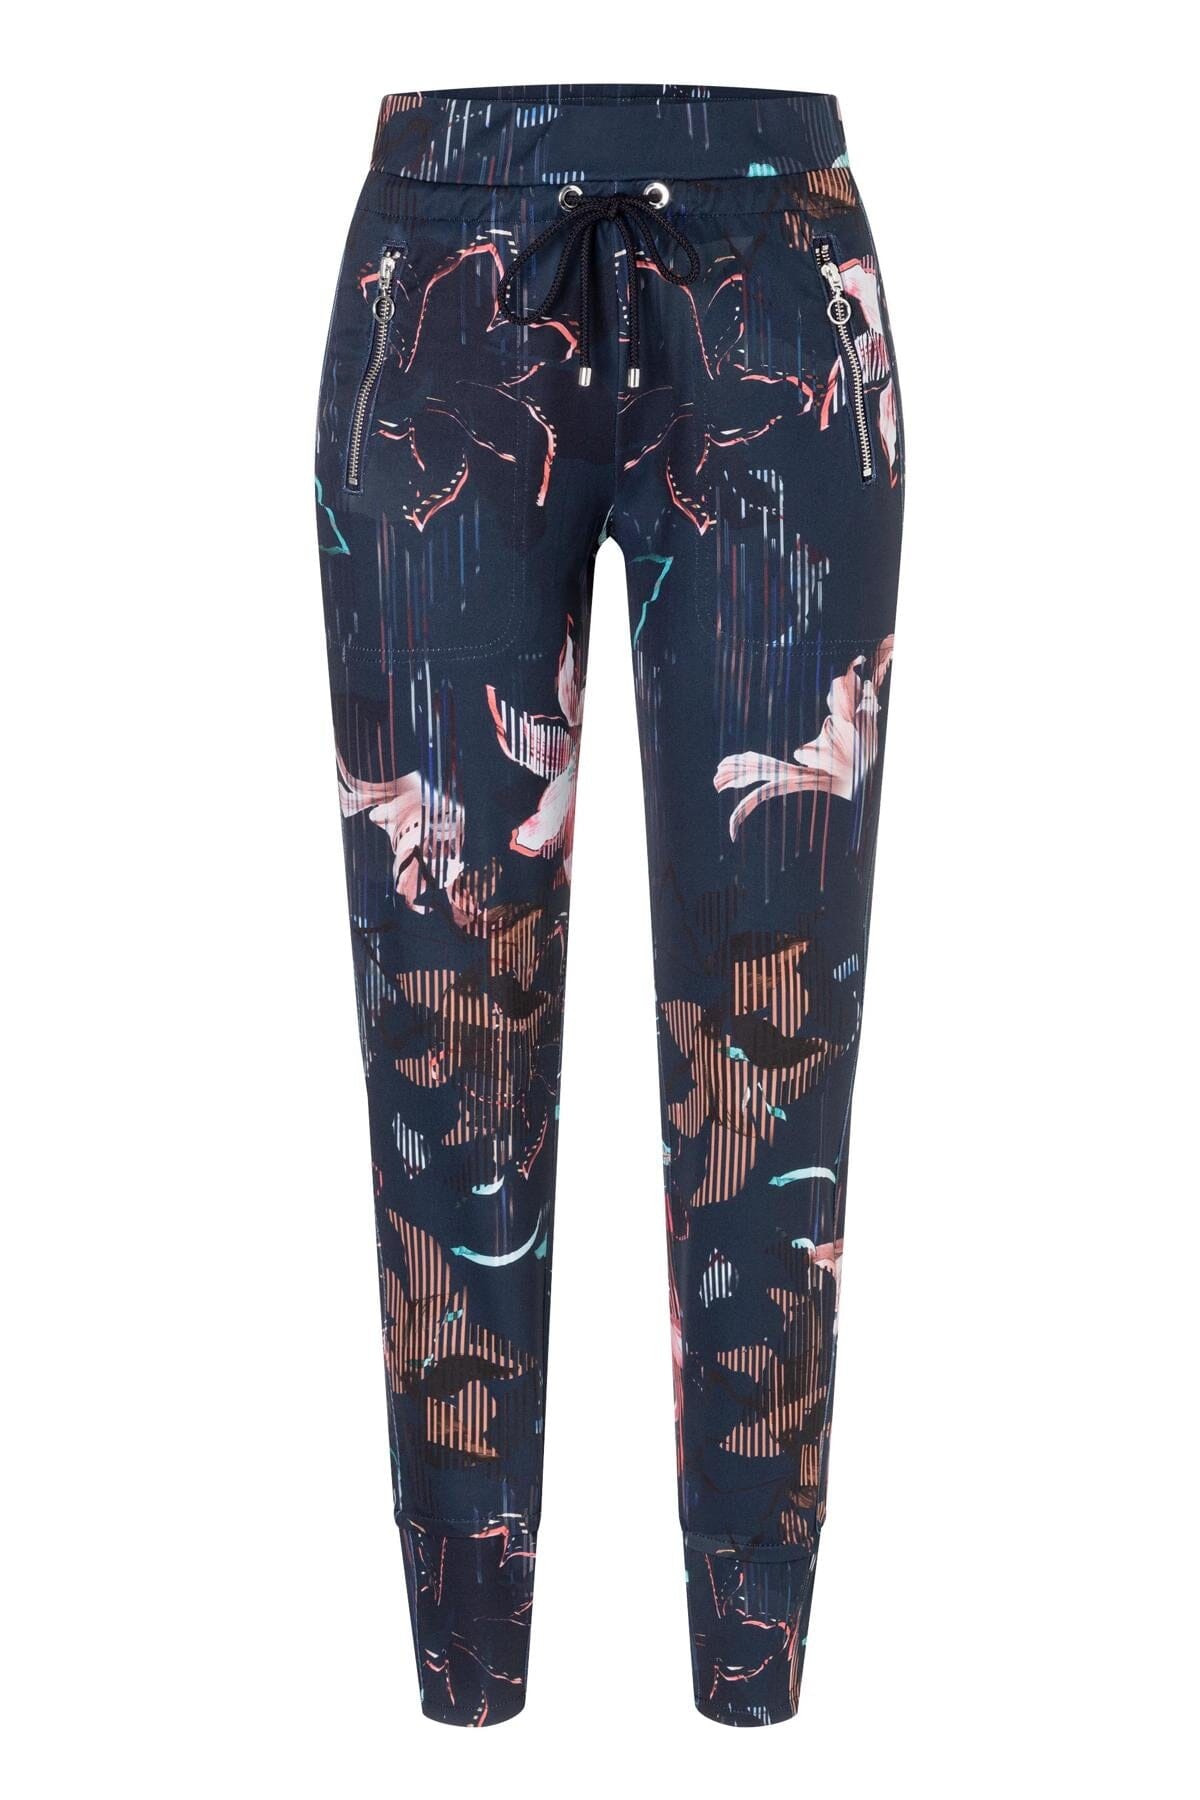 Pantalon motif floral Mac Jeans 